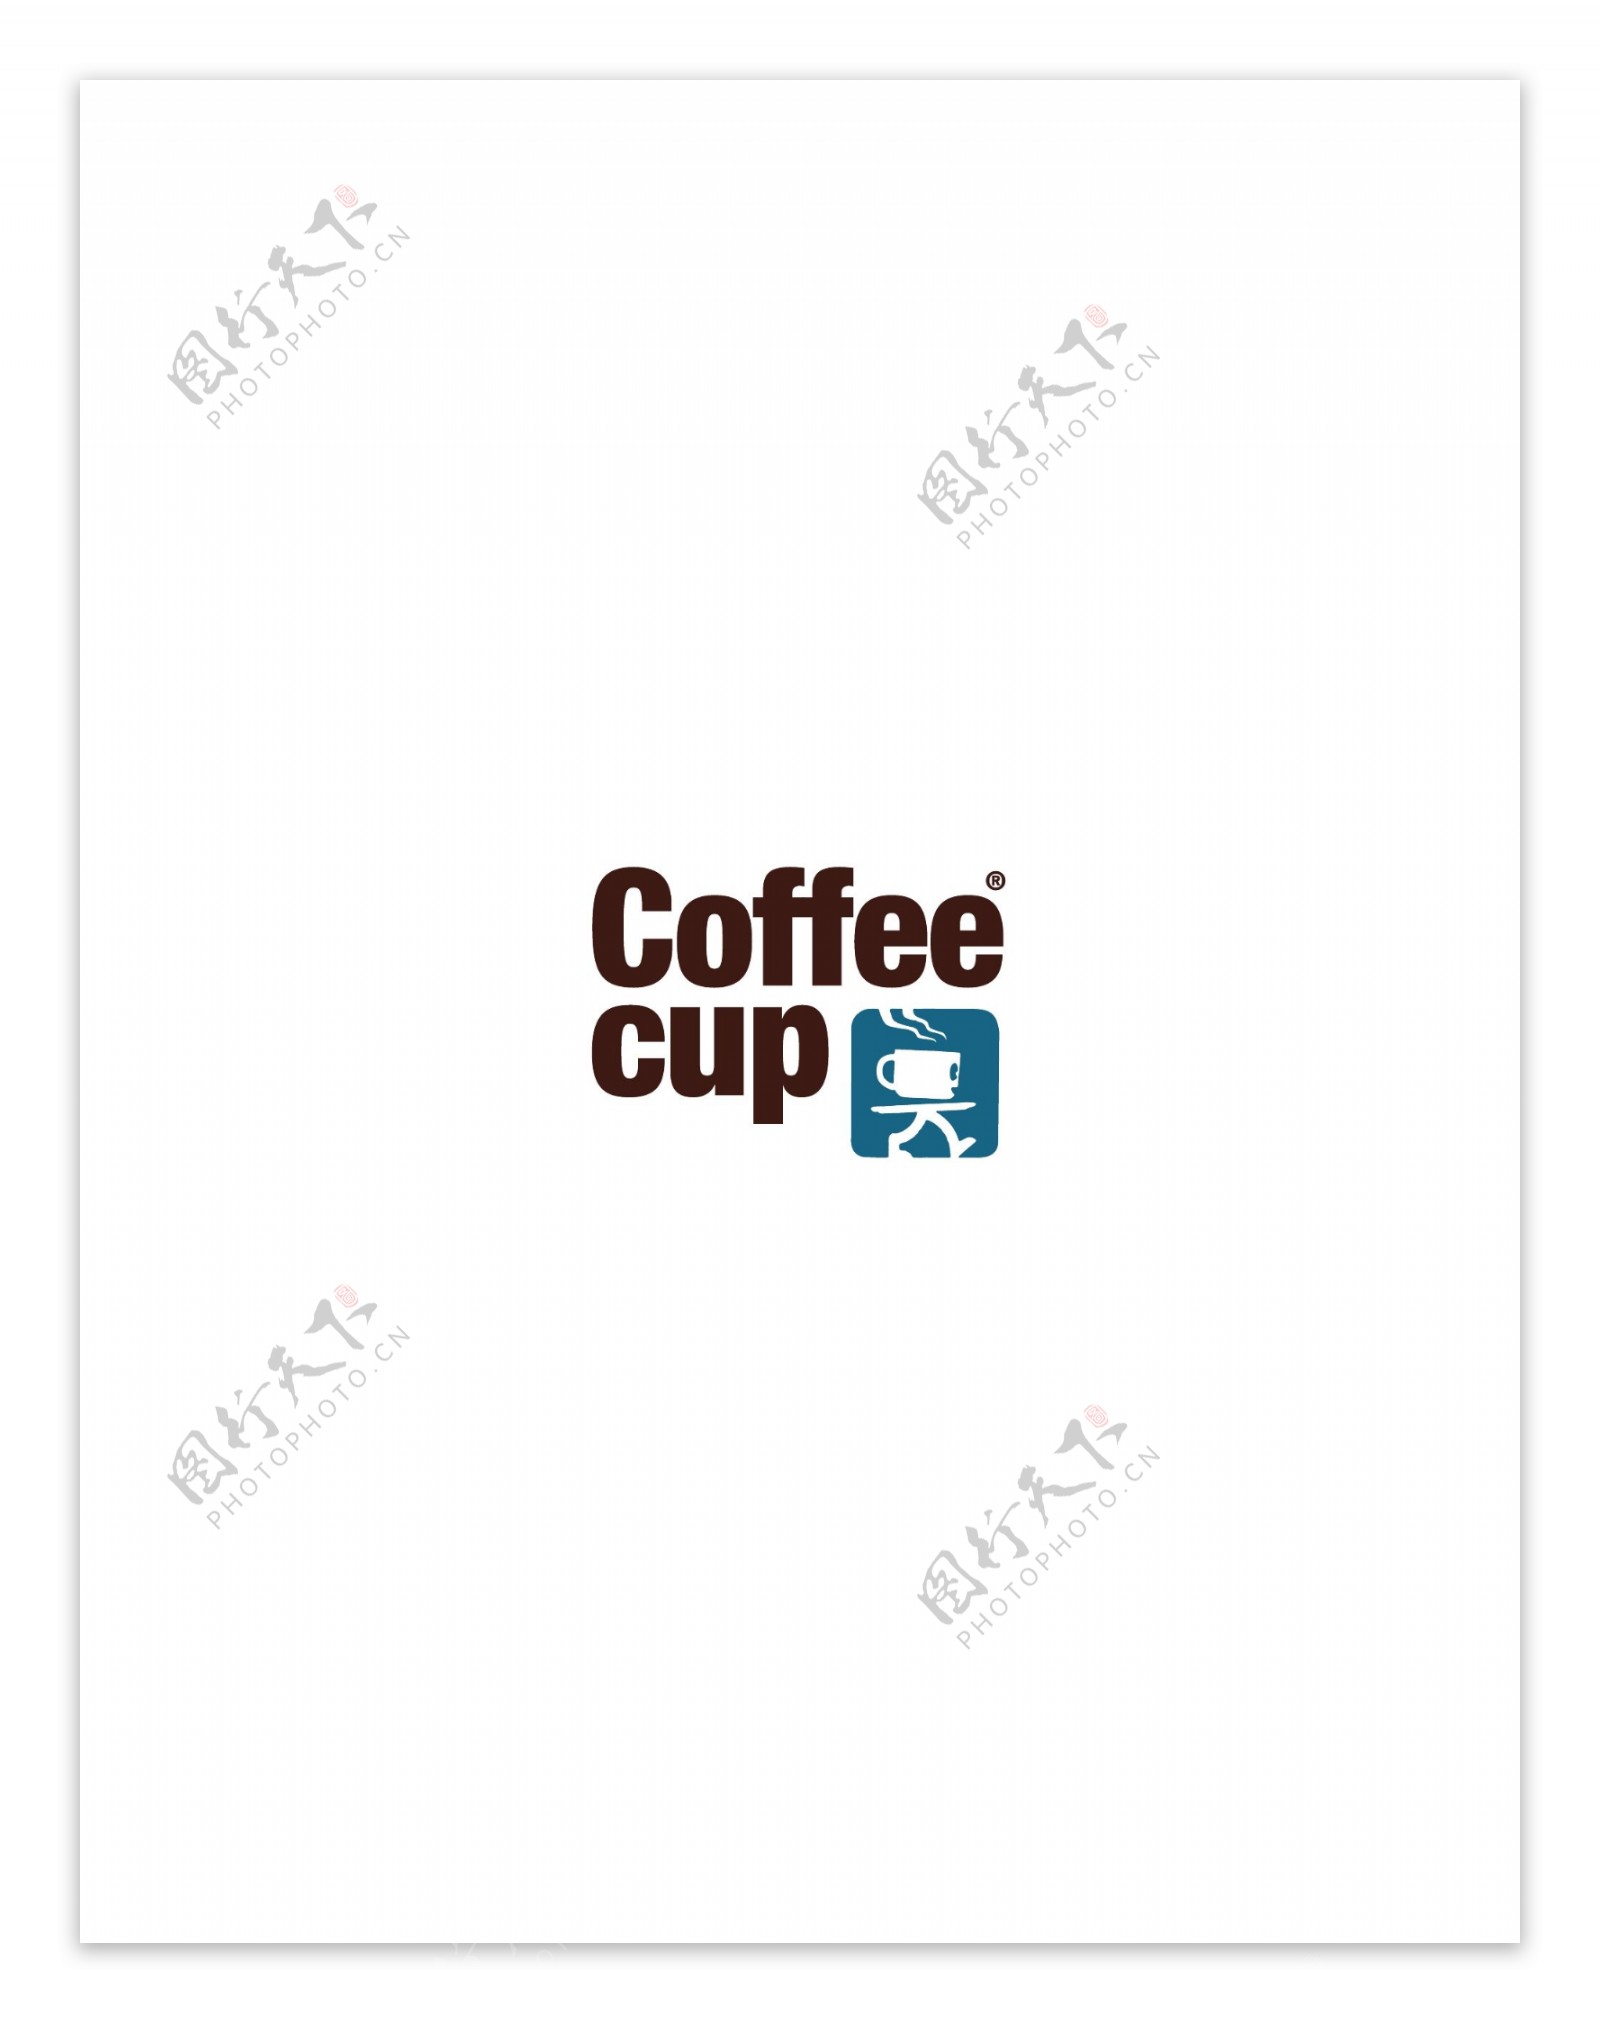 CoffeeCuplogo设计欣赏CoffeeCup知名饮料标志下载标志设计欣赏